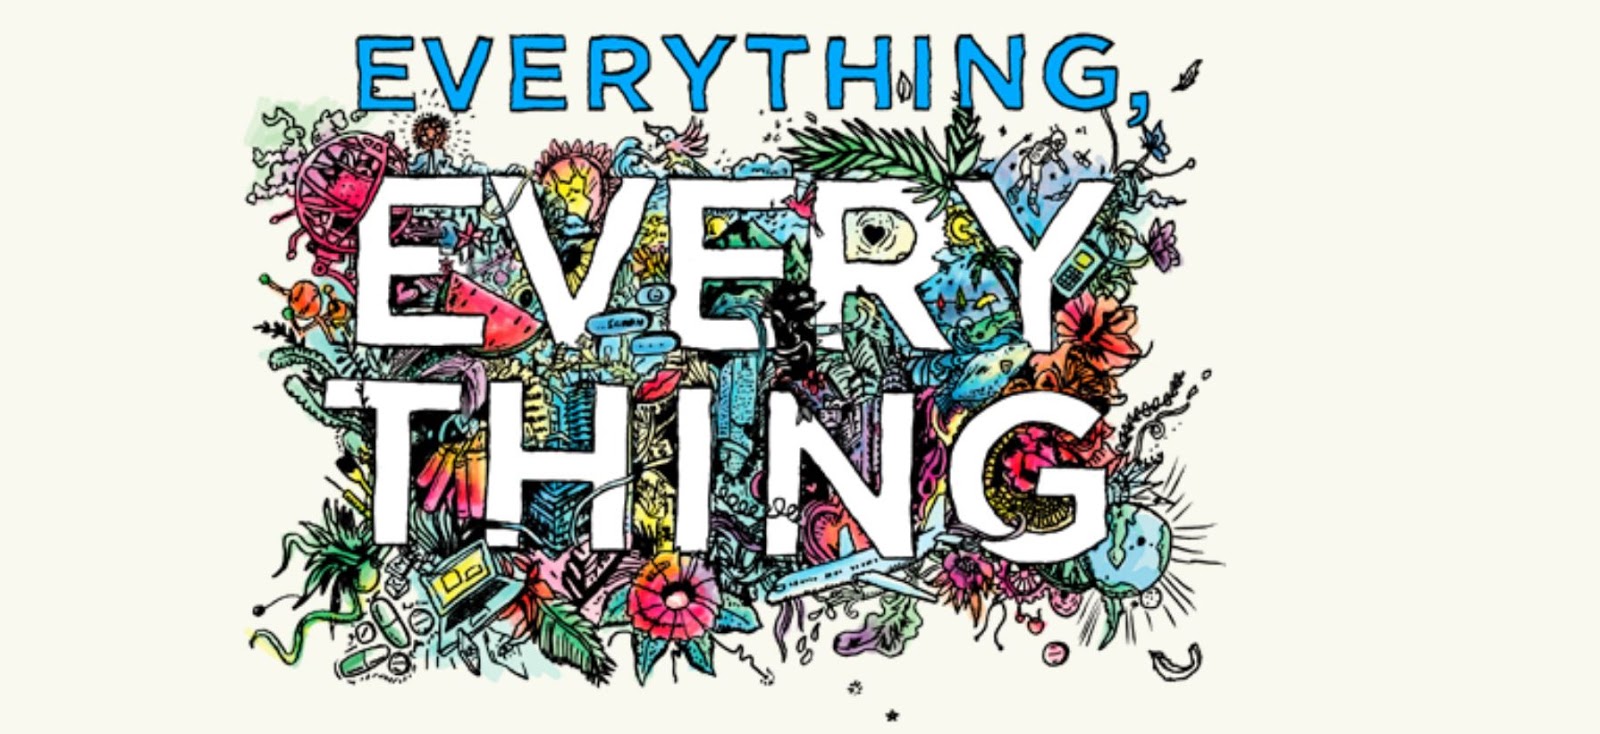 Here everything. Everything. Everything игра. Иконка everything. Everything about everything.